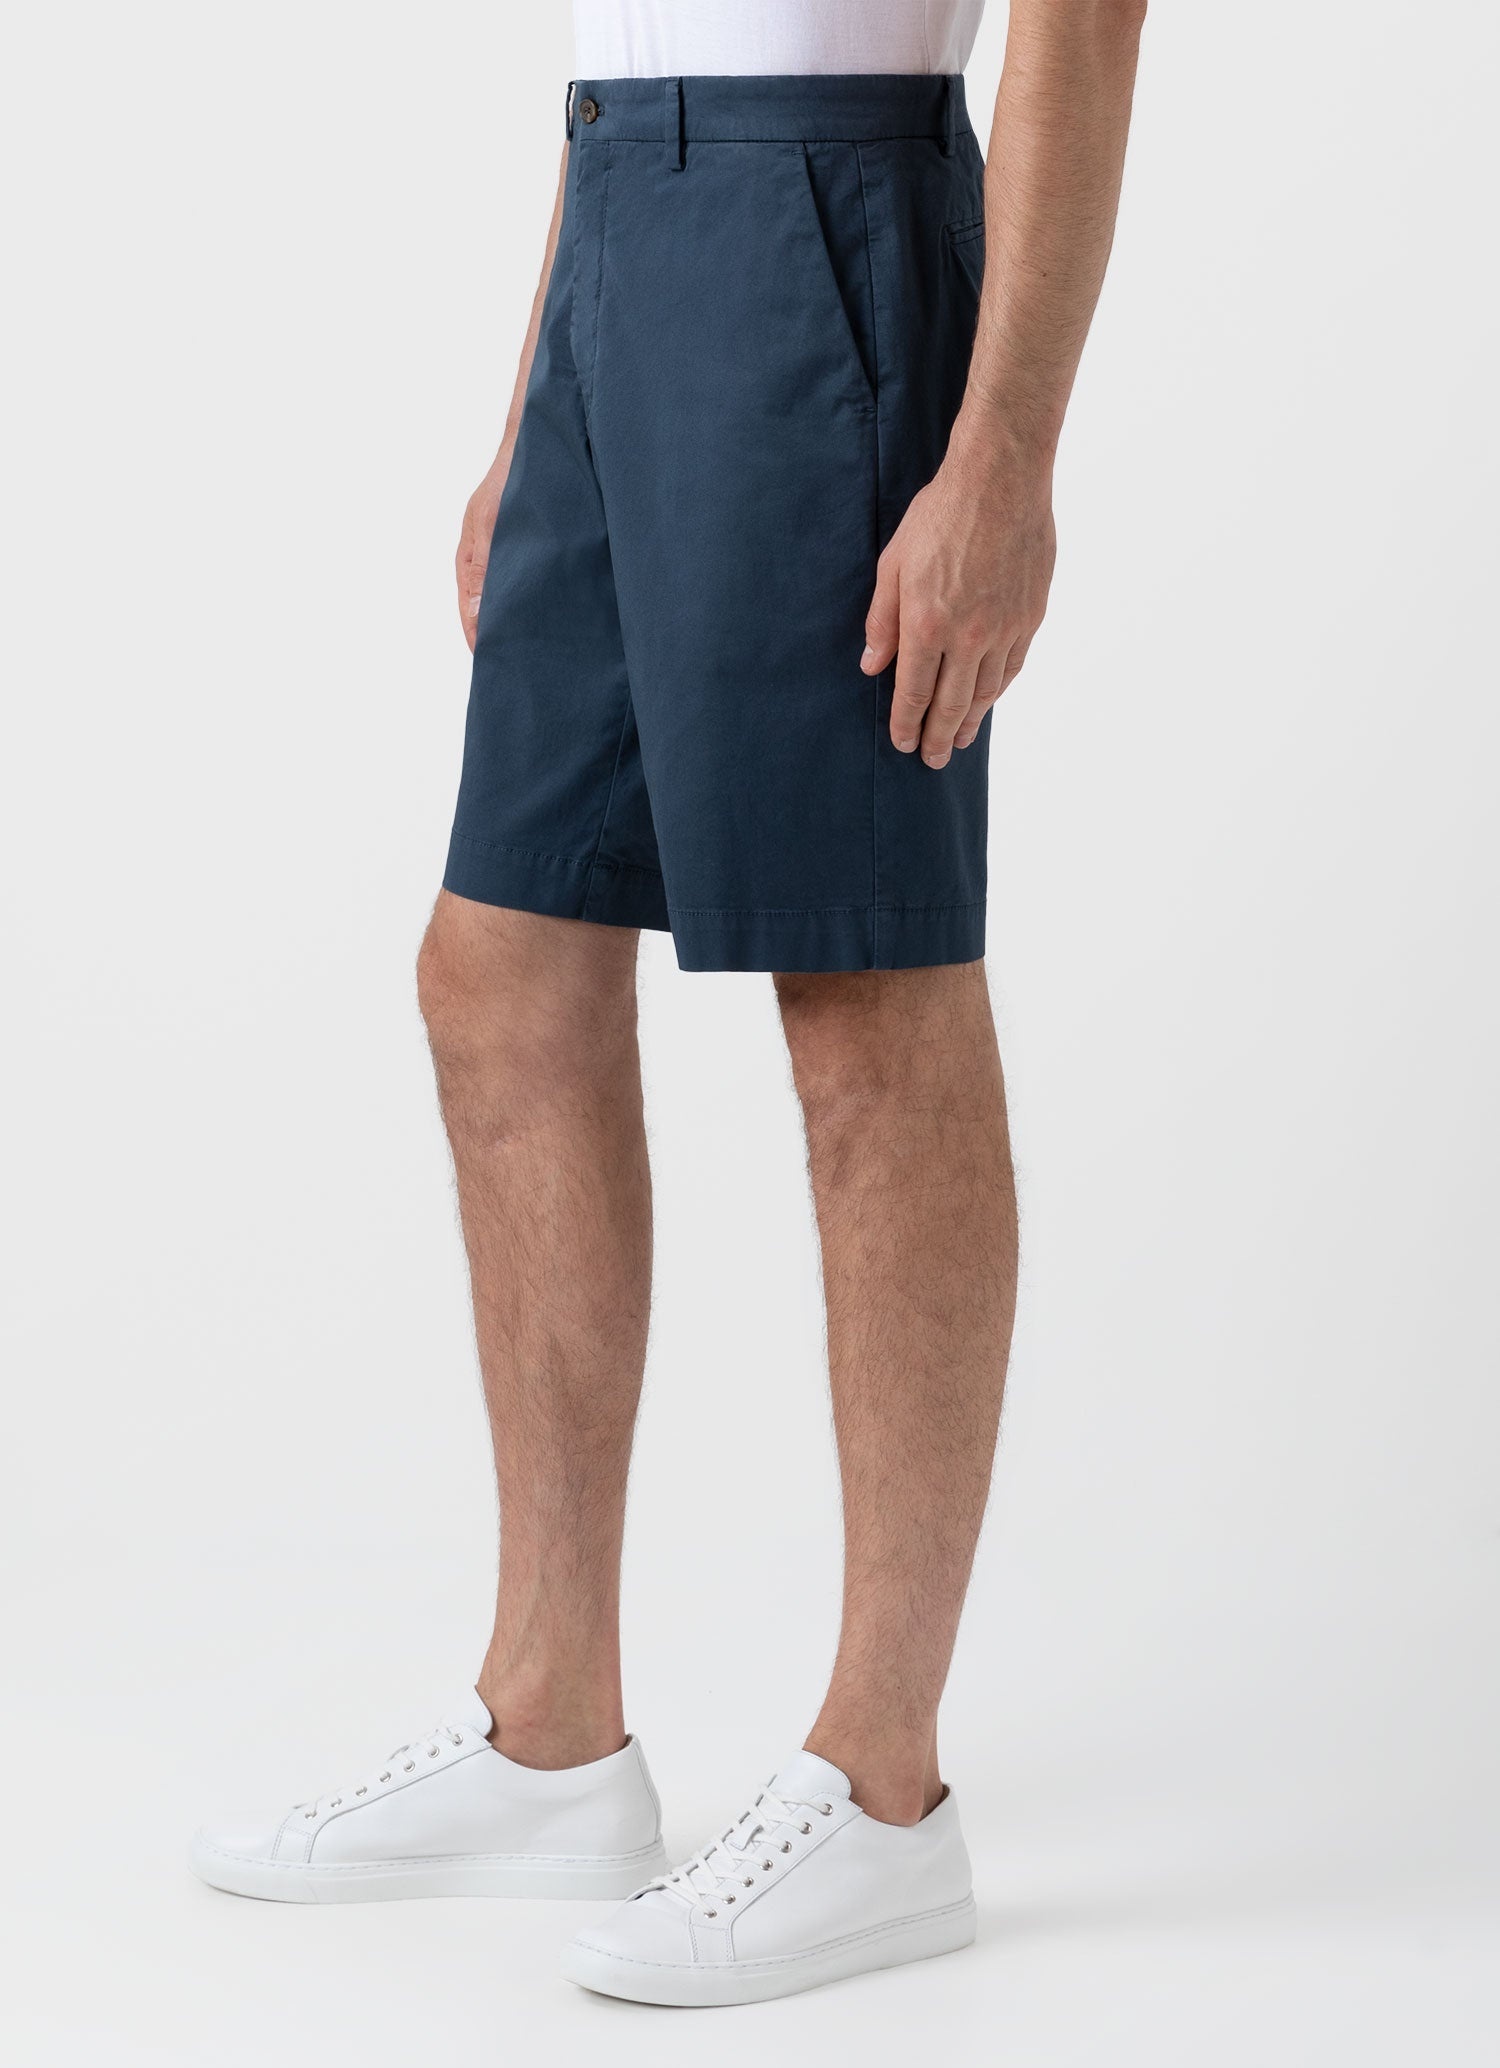 Classic Chino Shorts - 5